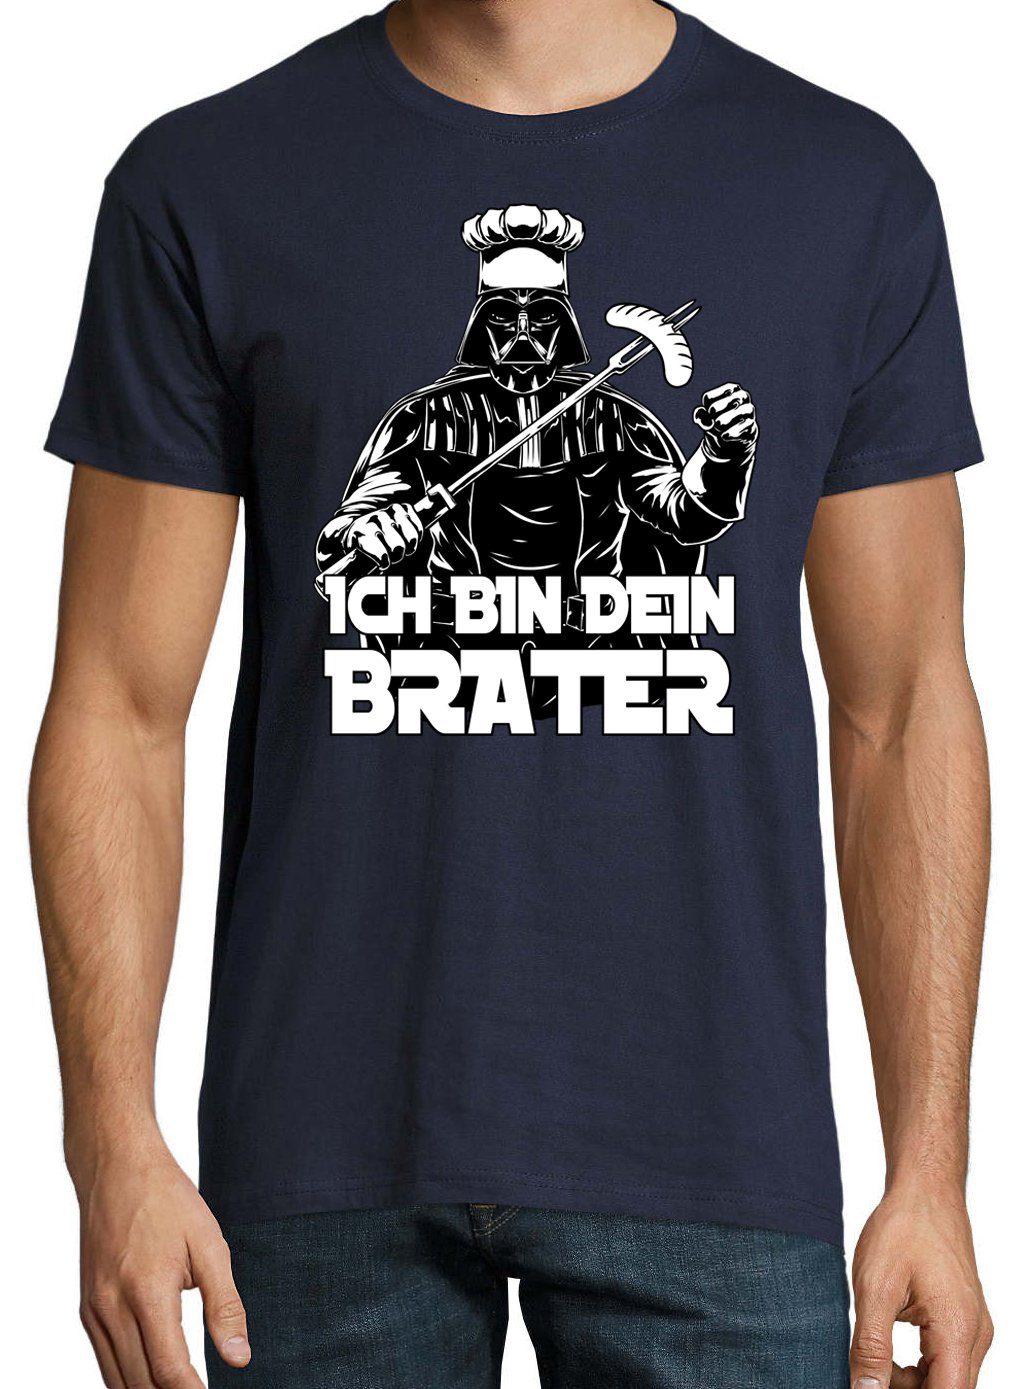 Youth Designz Brater" lustigem bin T-Shirt Spruch mit Herren Navyblau "Ich T-Shirt